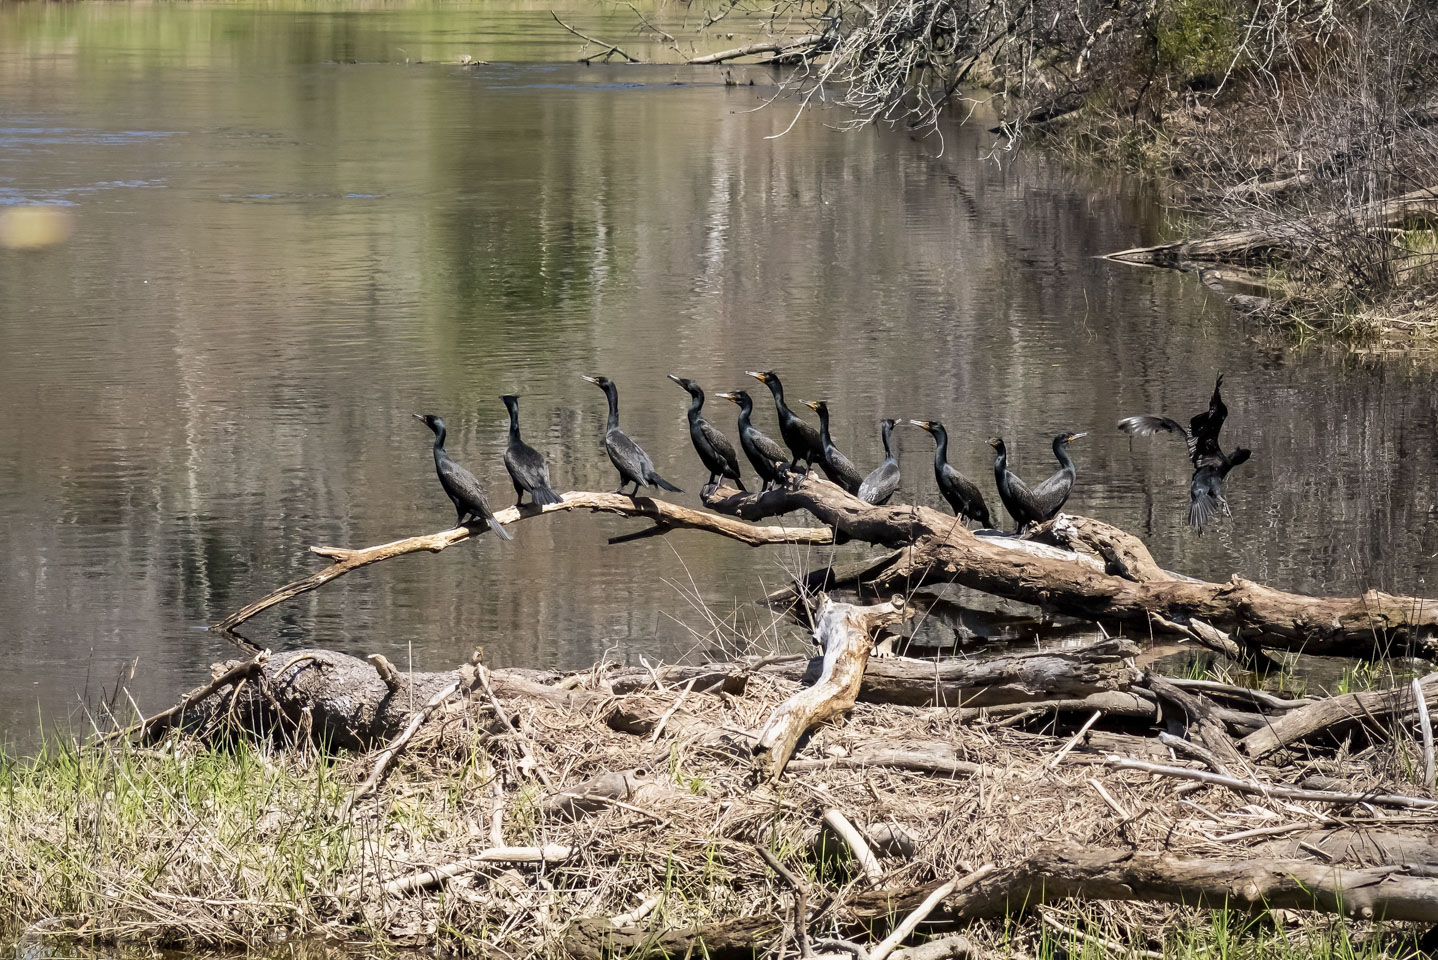 A line of cormorants on a log